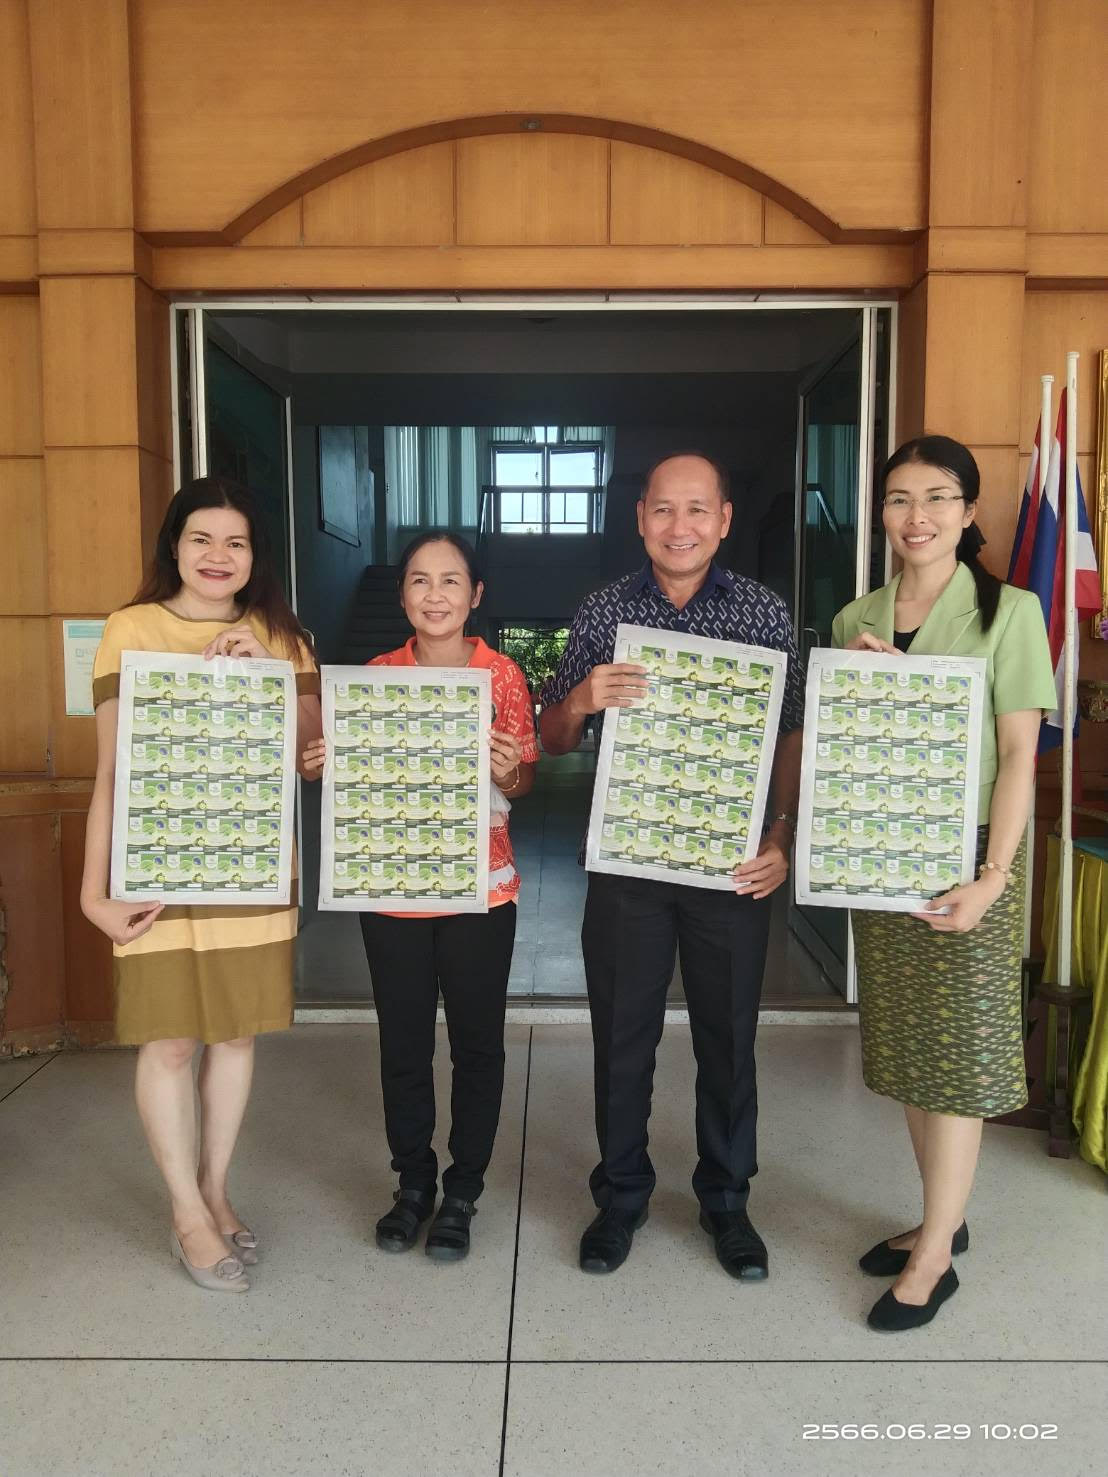 งานบริการวิชาการ มหาวิทยาลัยวงษ์ชวลิตกุล ได้ลงพื้นที่นำนวัตกรรมสู่ชุมชนตำบลหนองงูเหลือม ในวันที่ 29 มิถุนายน 2566